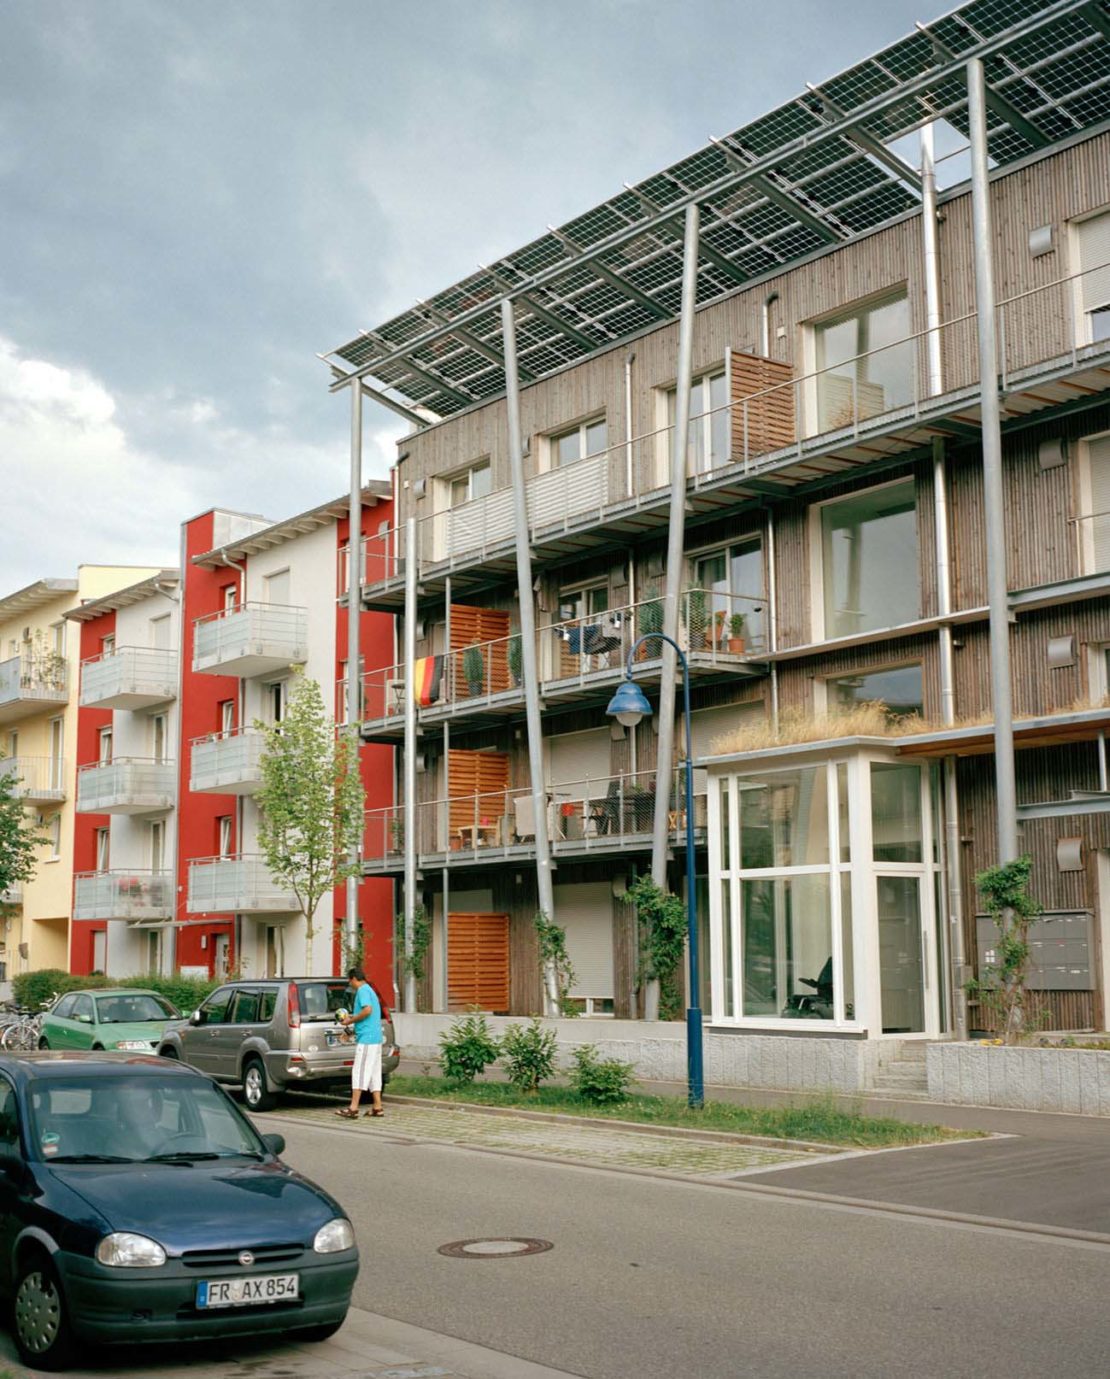 Housing in Rieselfeld